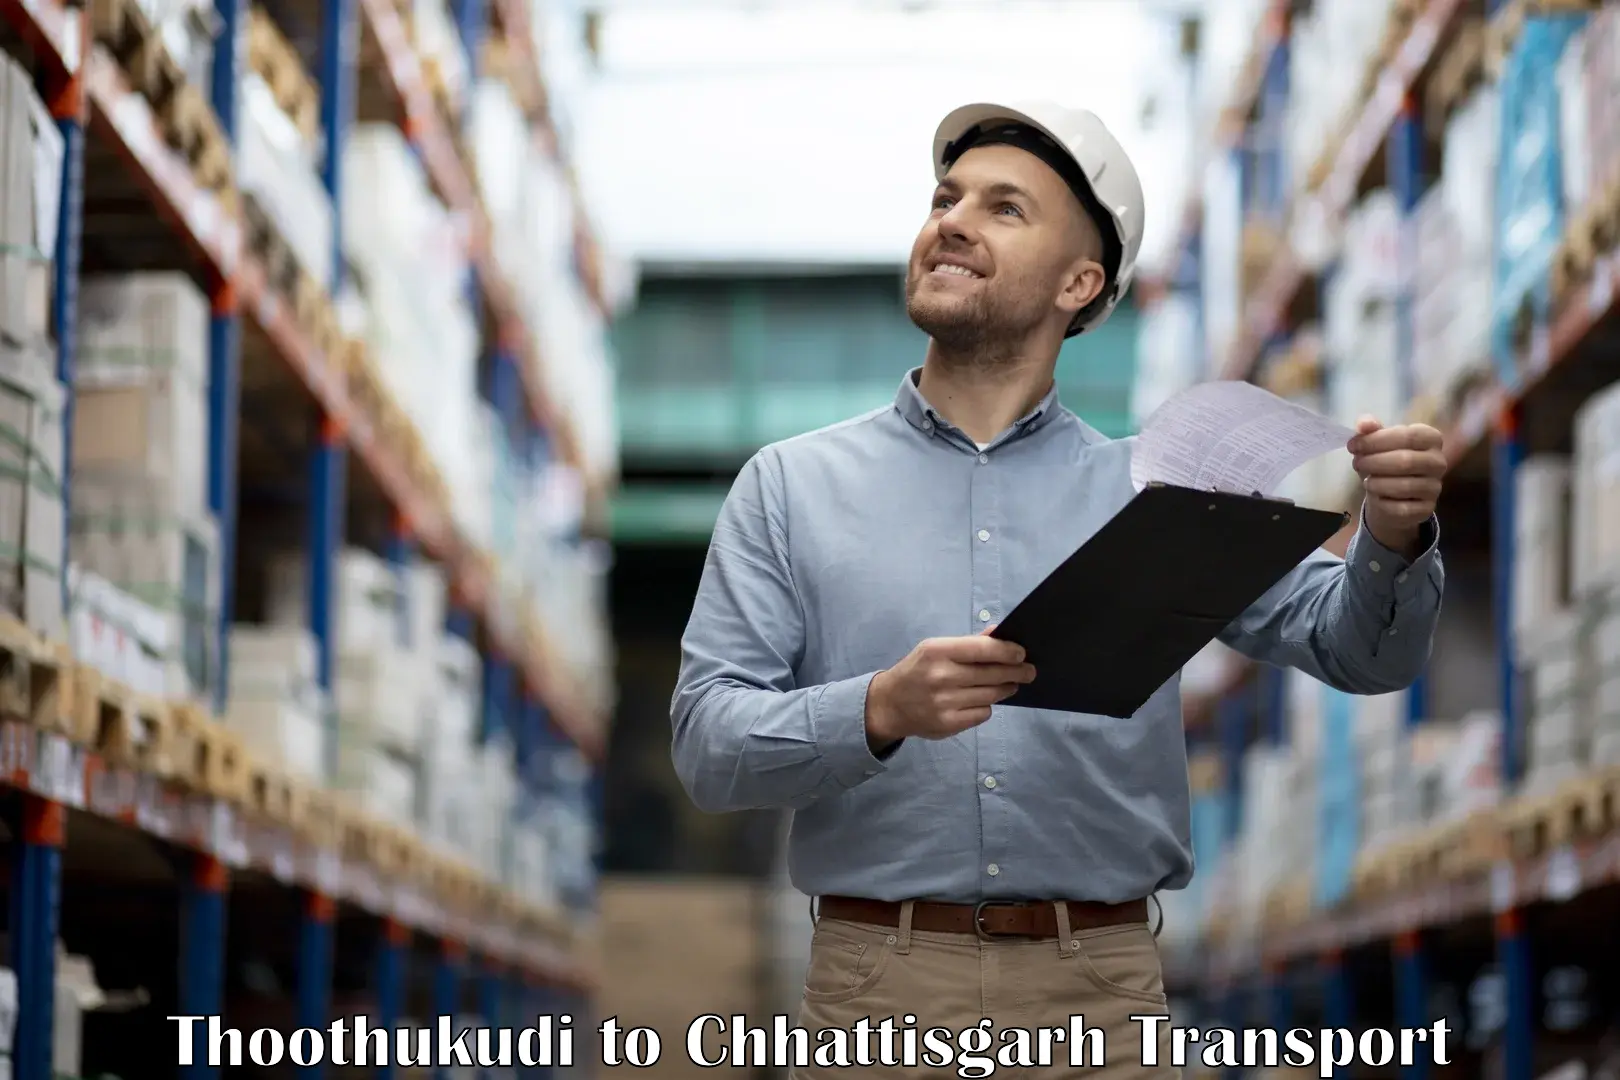 Online transport service Thoothukudi to Charama